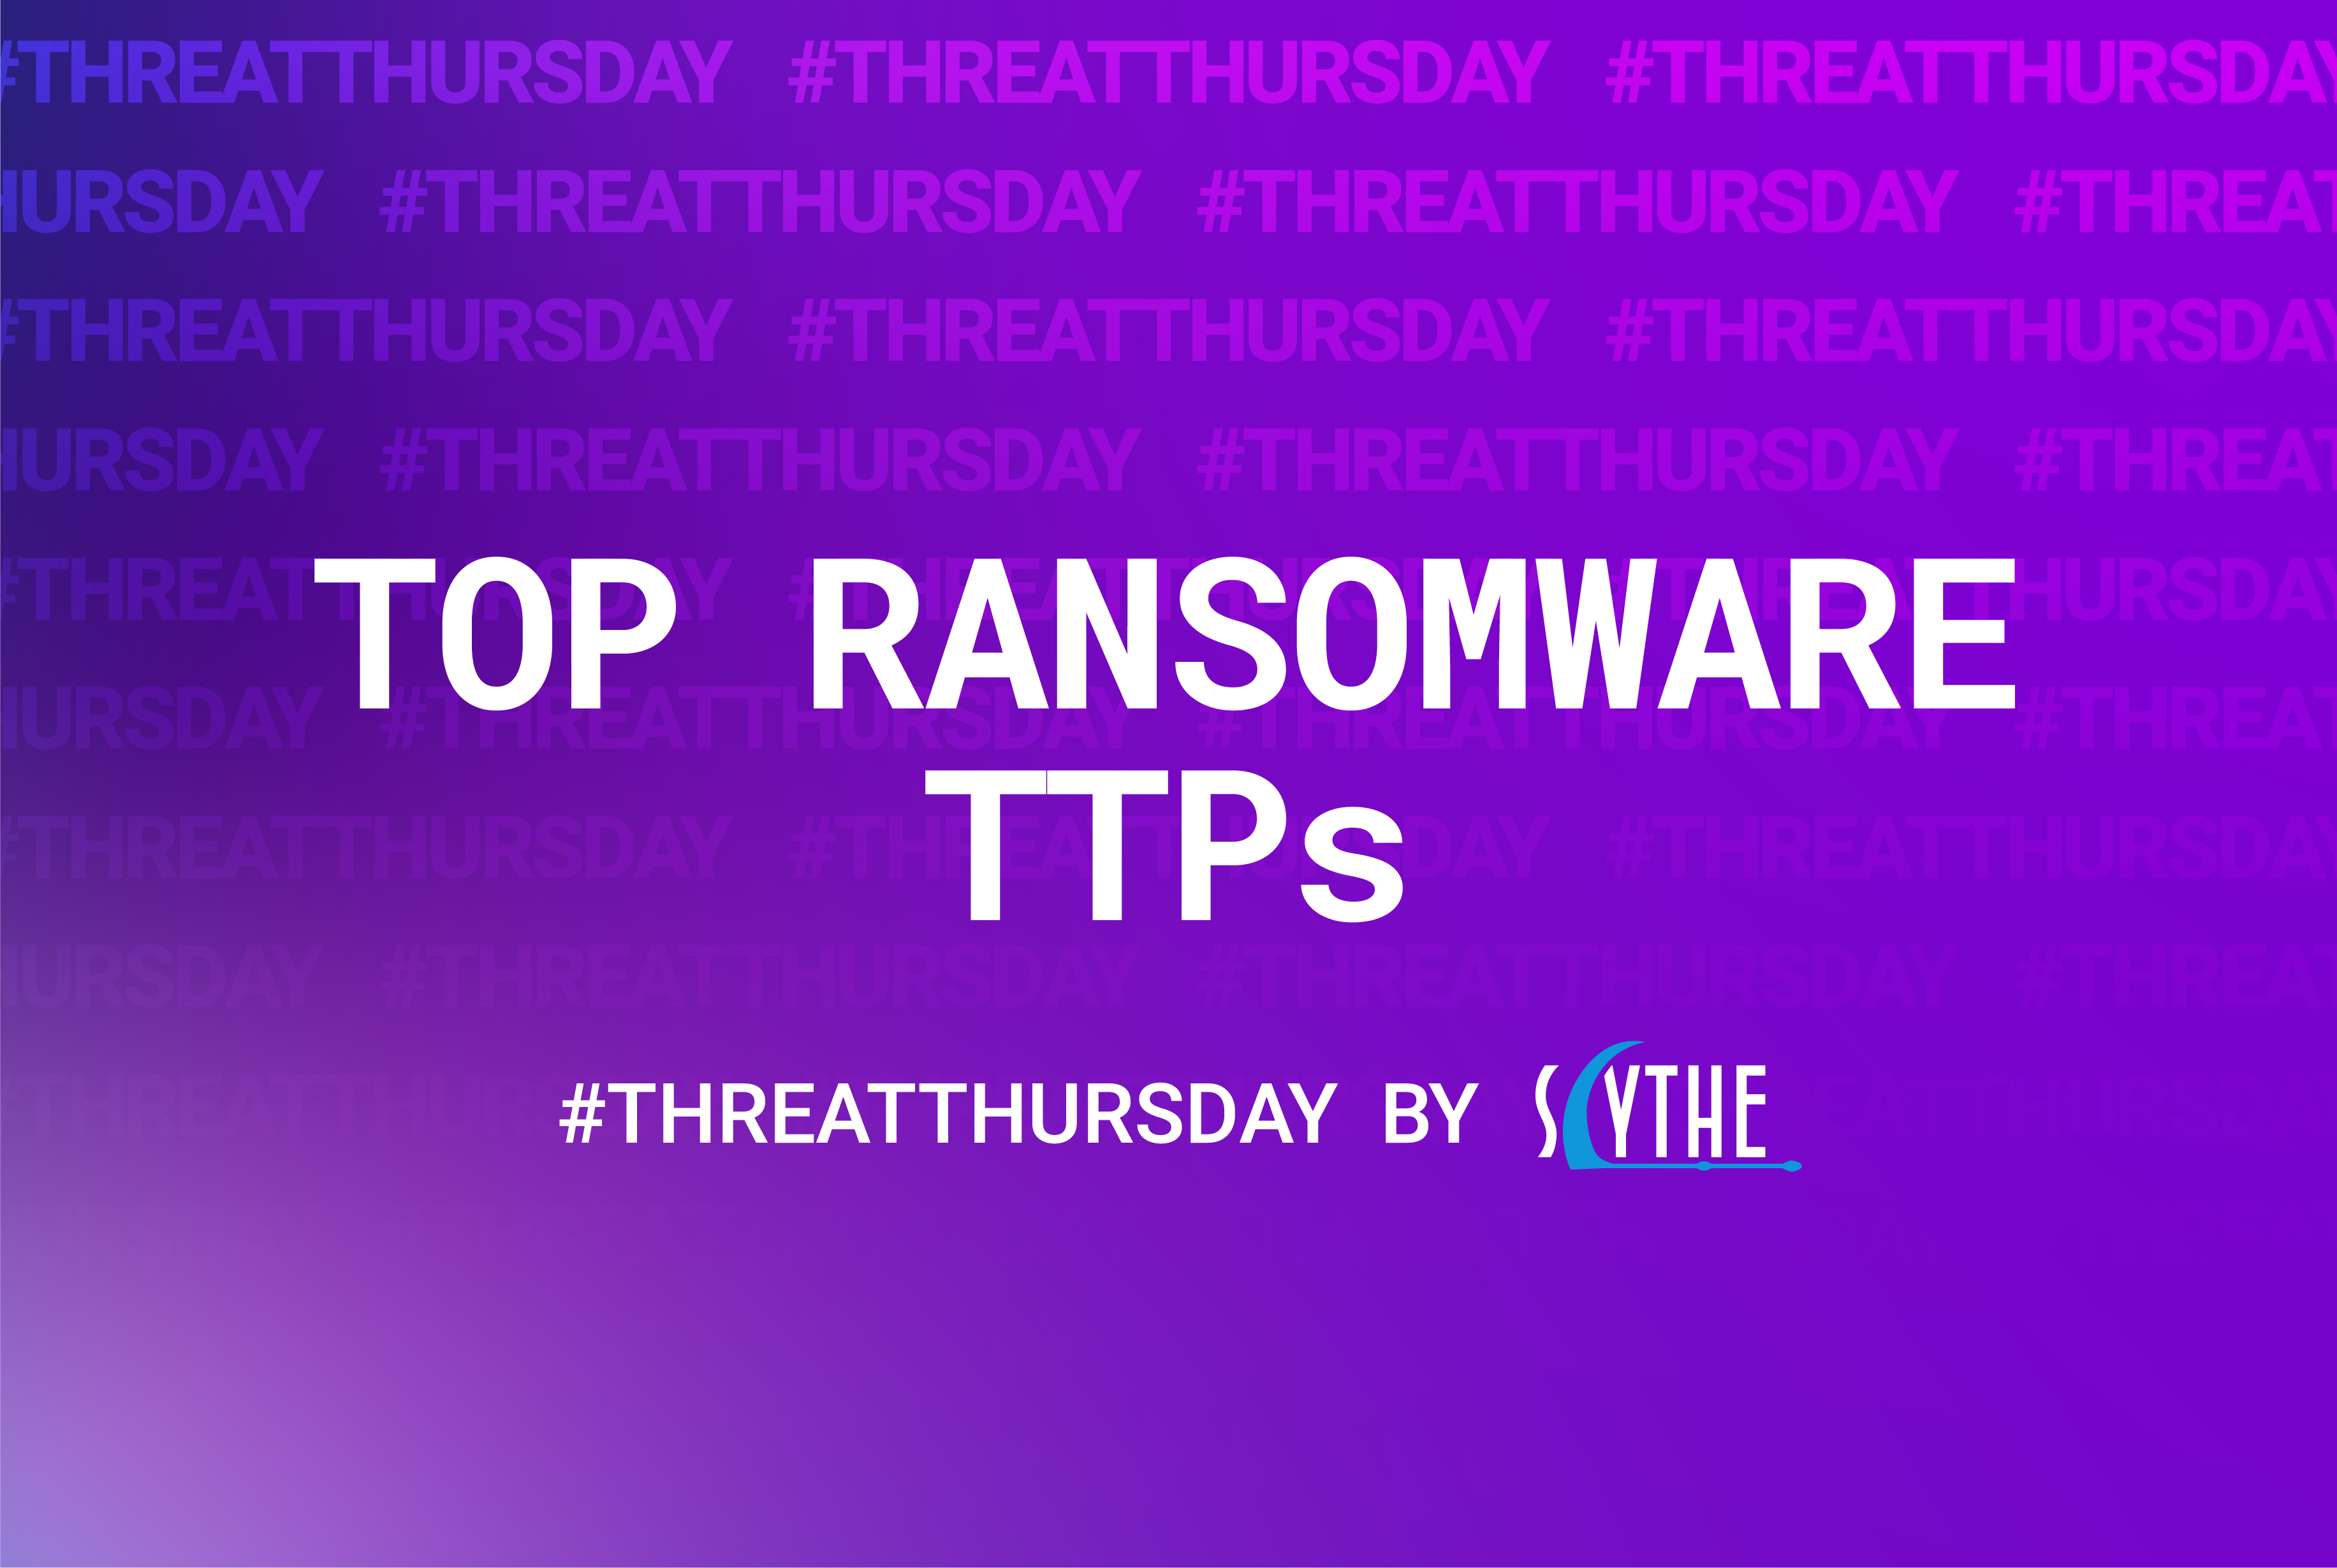 Threat Thursday Top Ransomware TTPs